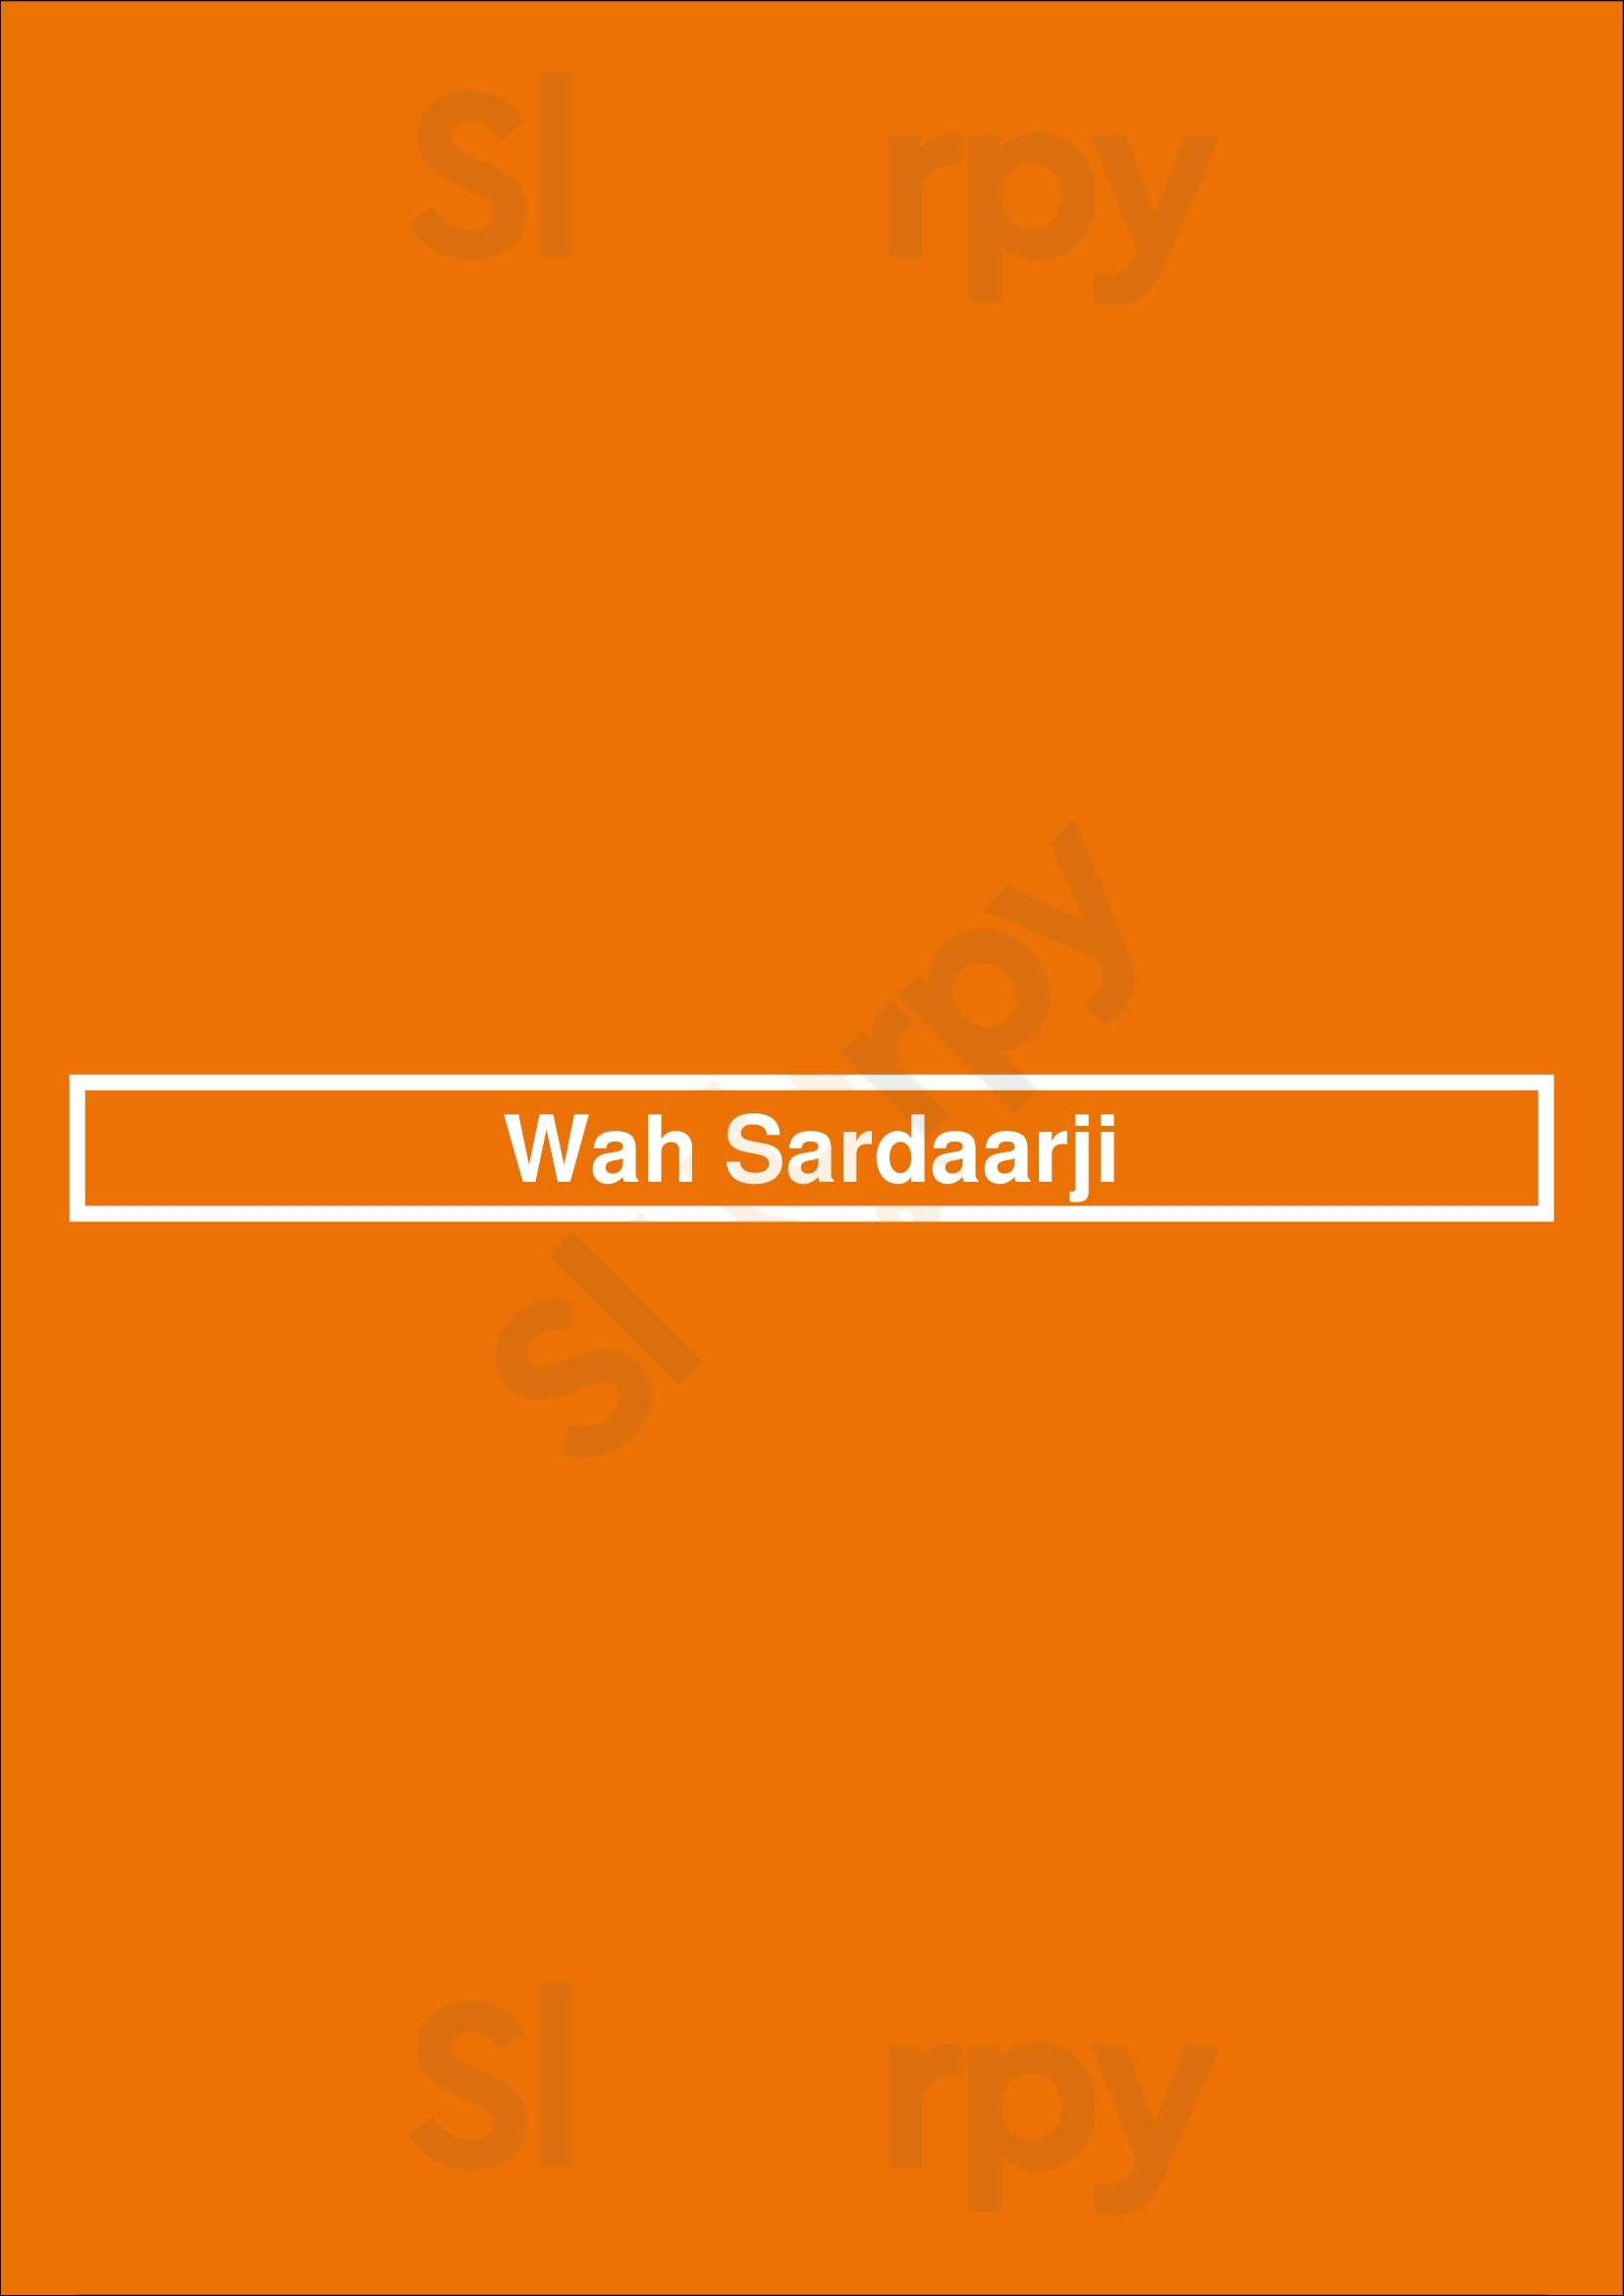 Wah Sardaarji Hamilton Menu - 1